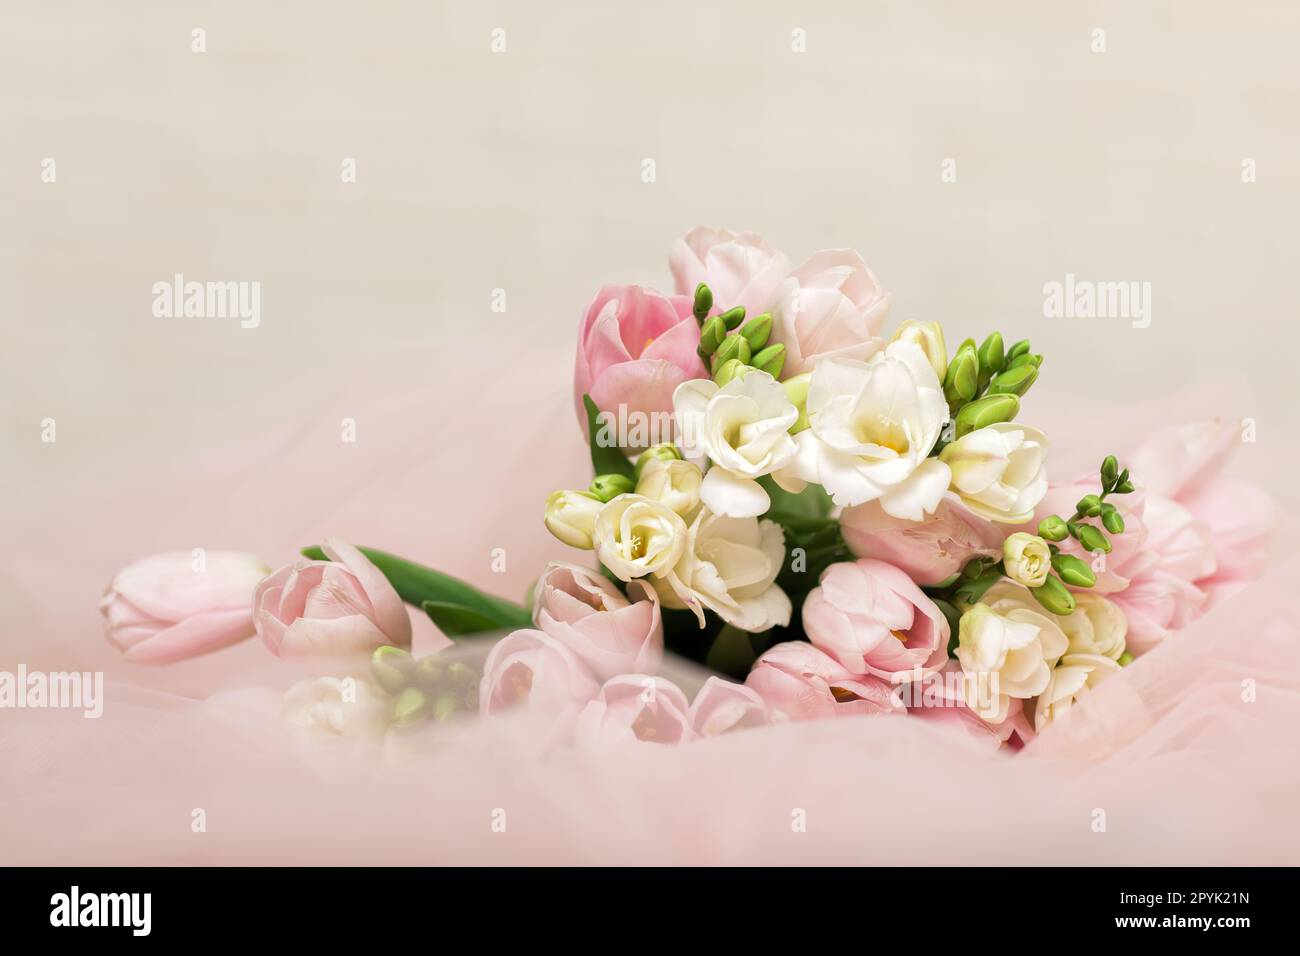 le mariage beau bouquet de tulipes roses Banque D'Images